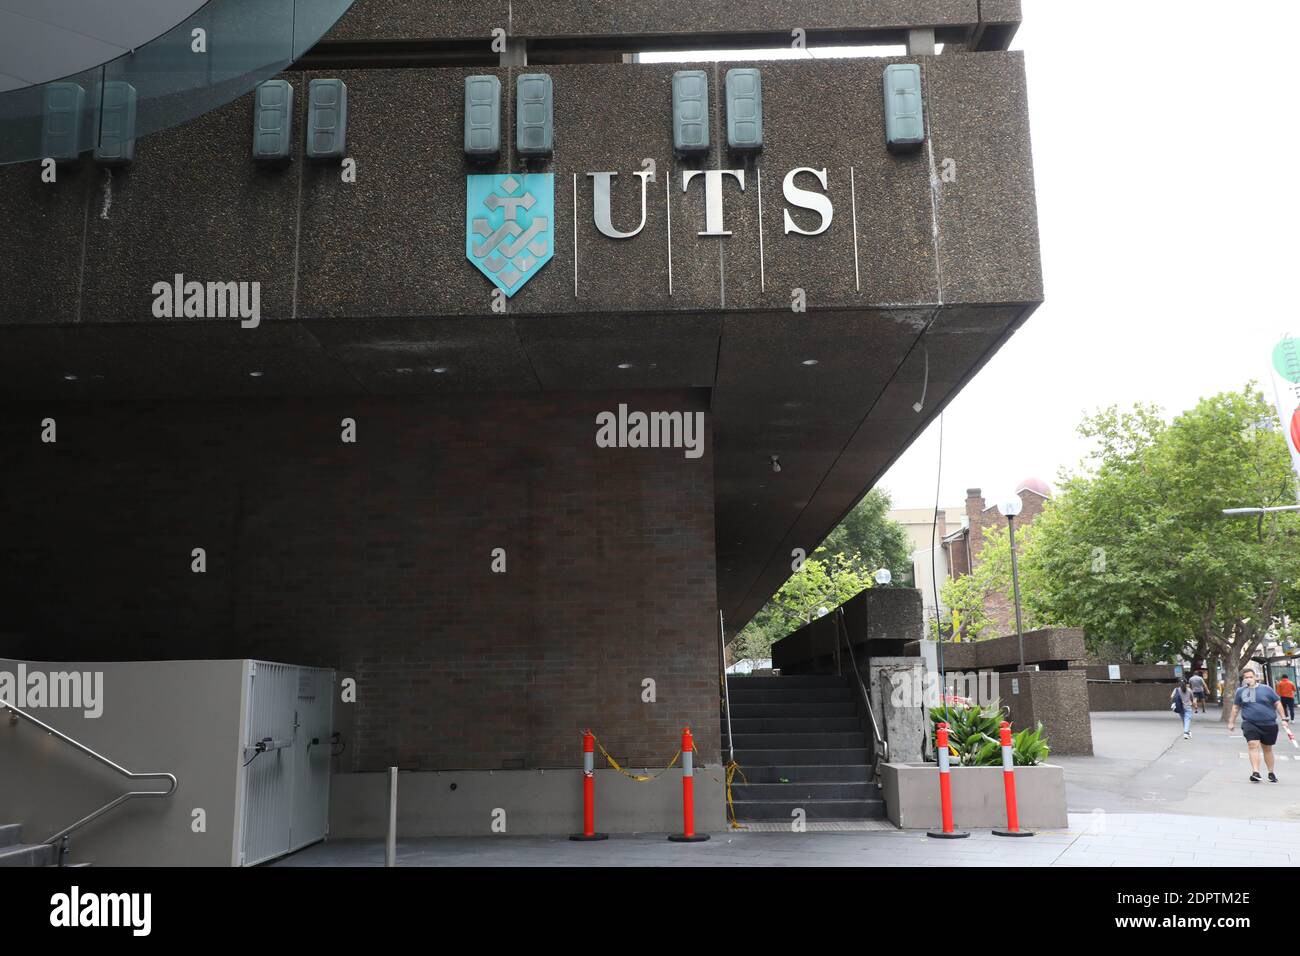 UTS (University of Technology Sydney) on Broadway, Sydney. Stock Photo